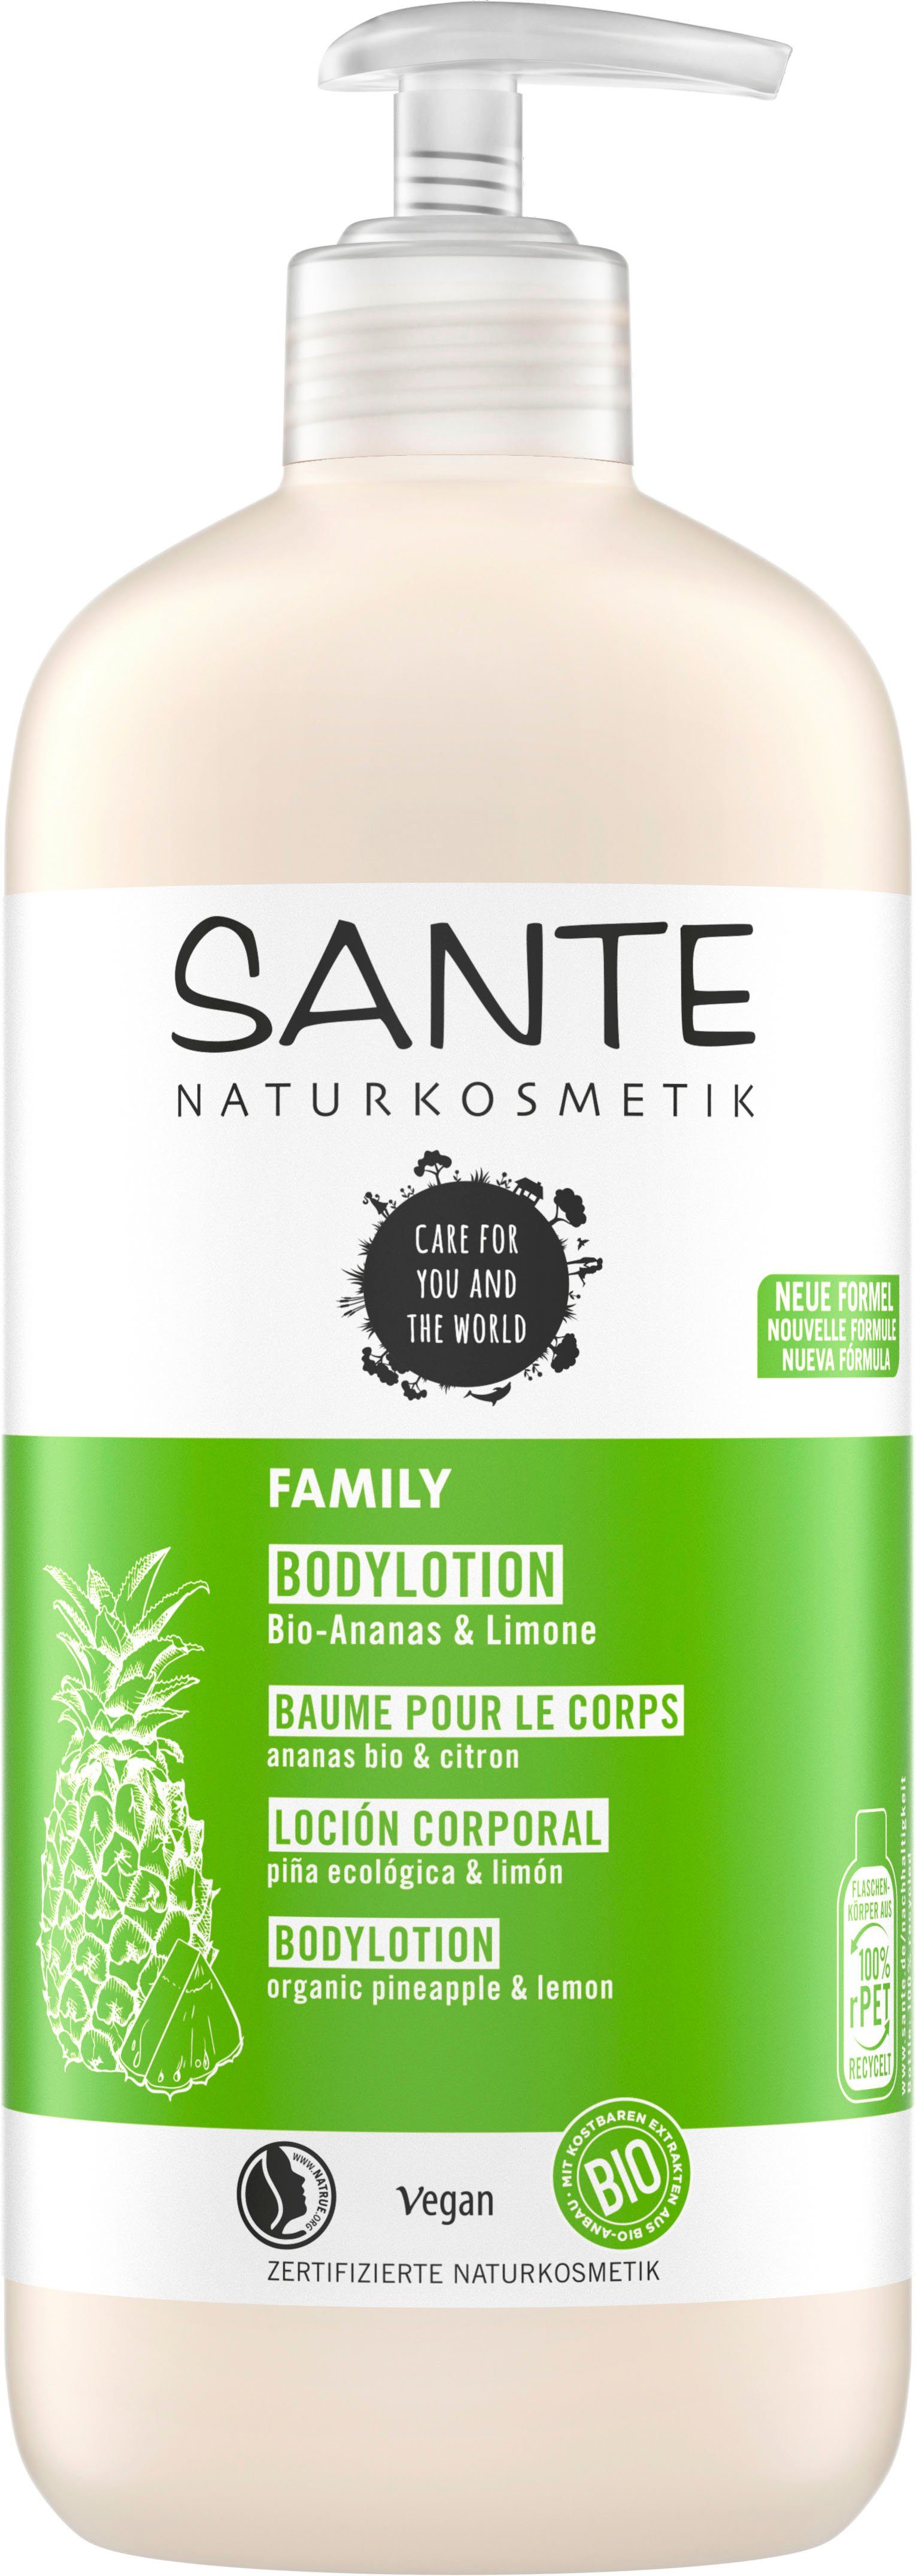 Bodylotion, Bodylotion schützt SANTE Feuchtigkeit Spendet dem Sante & vor Austrocknen intensiv Family